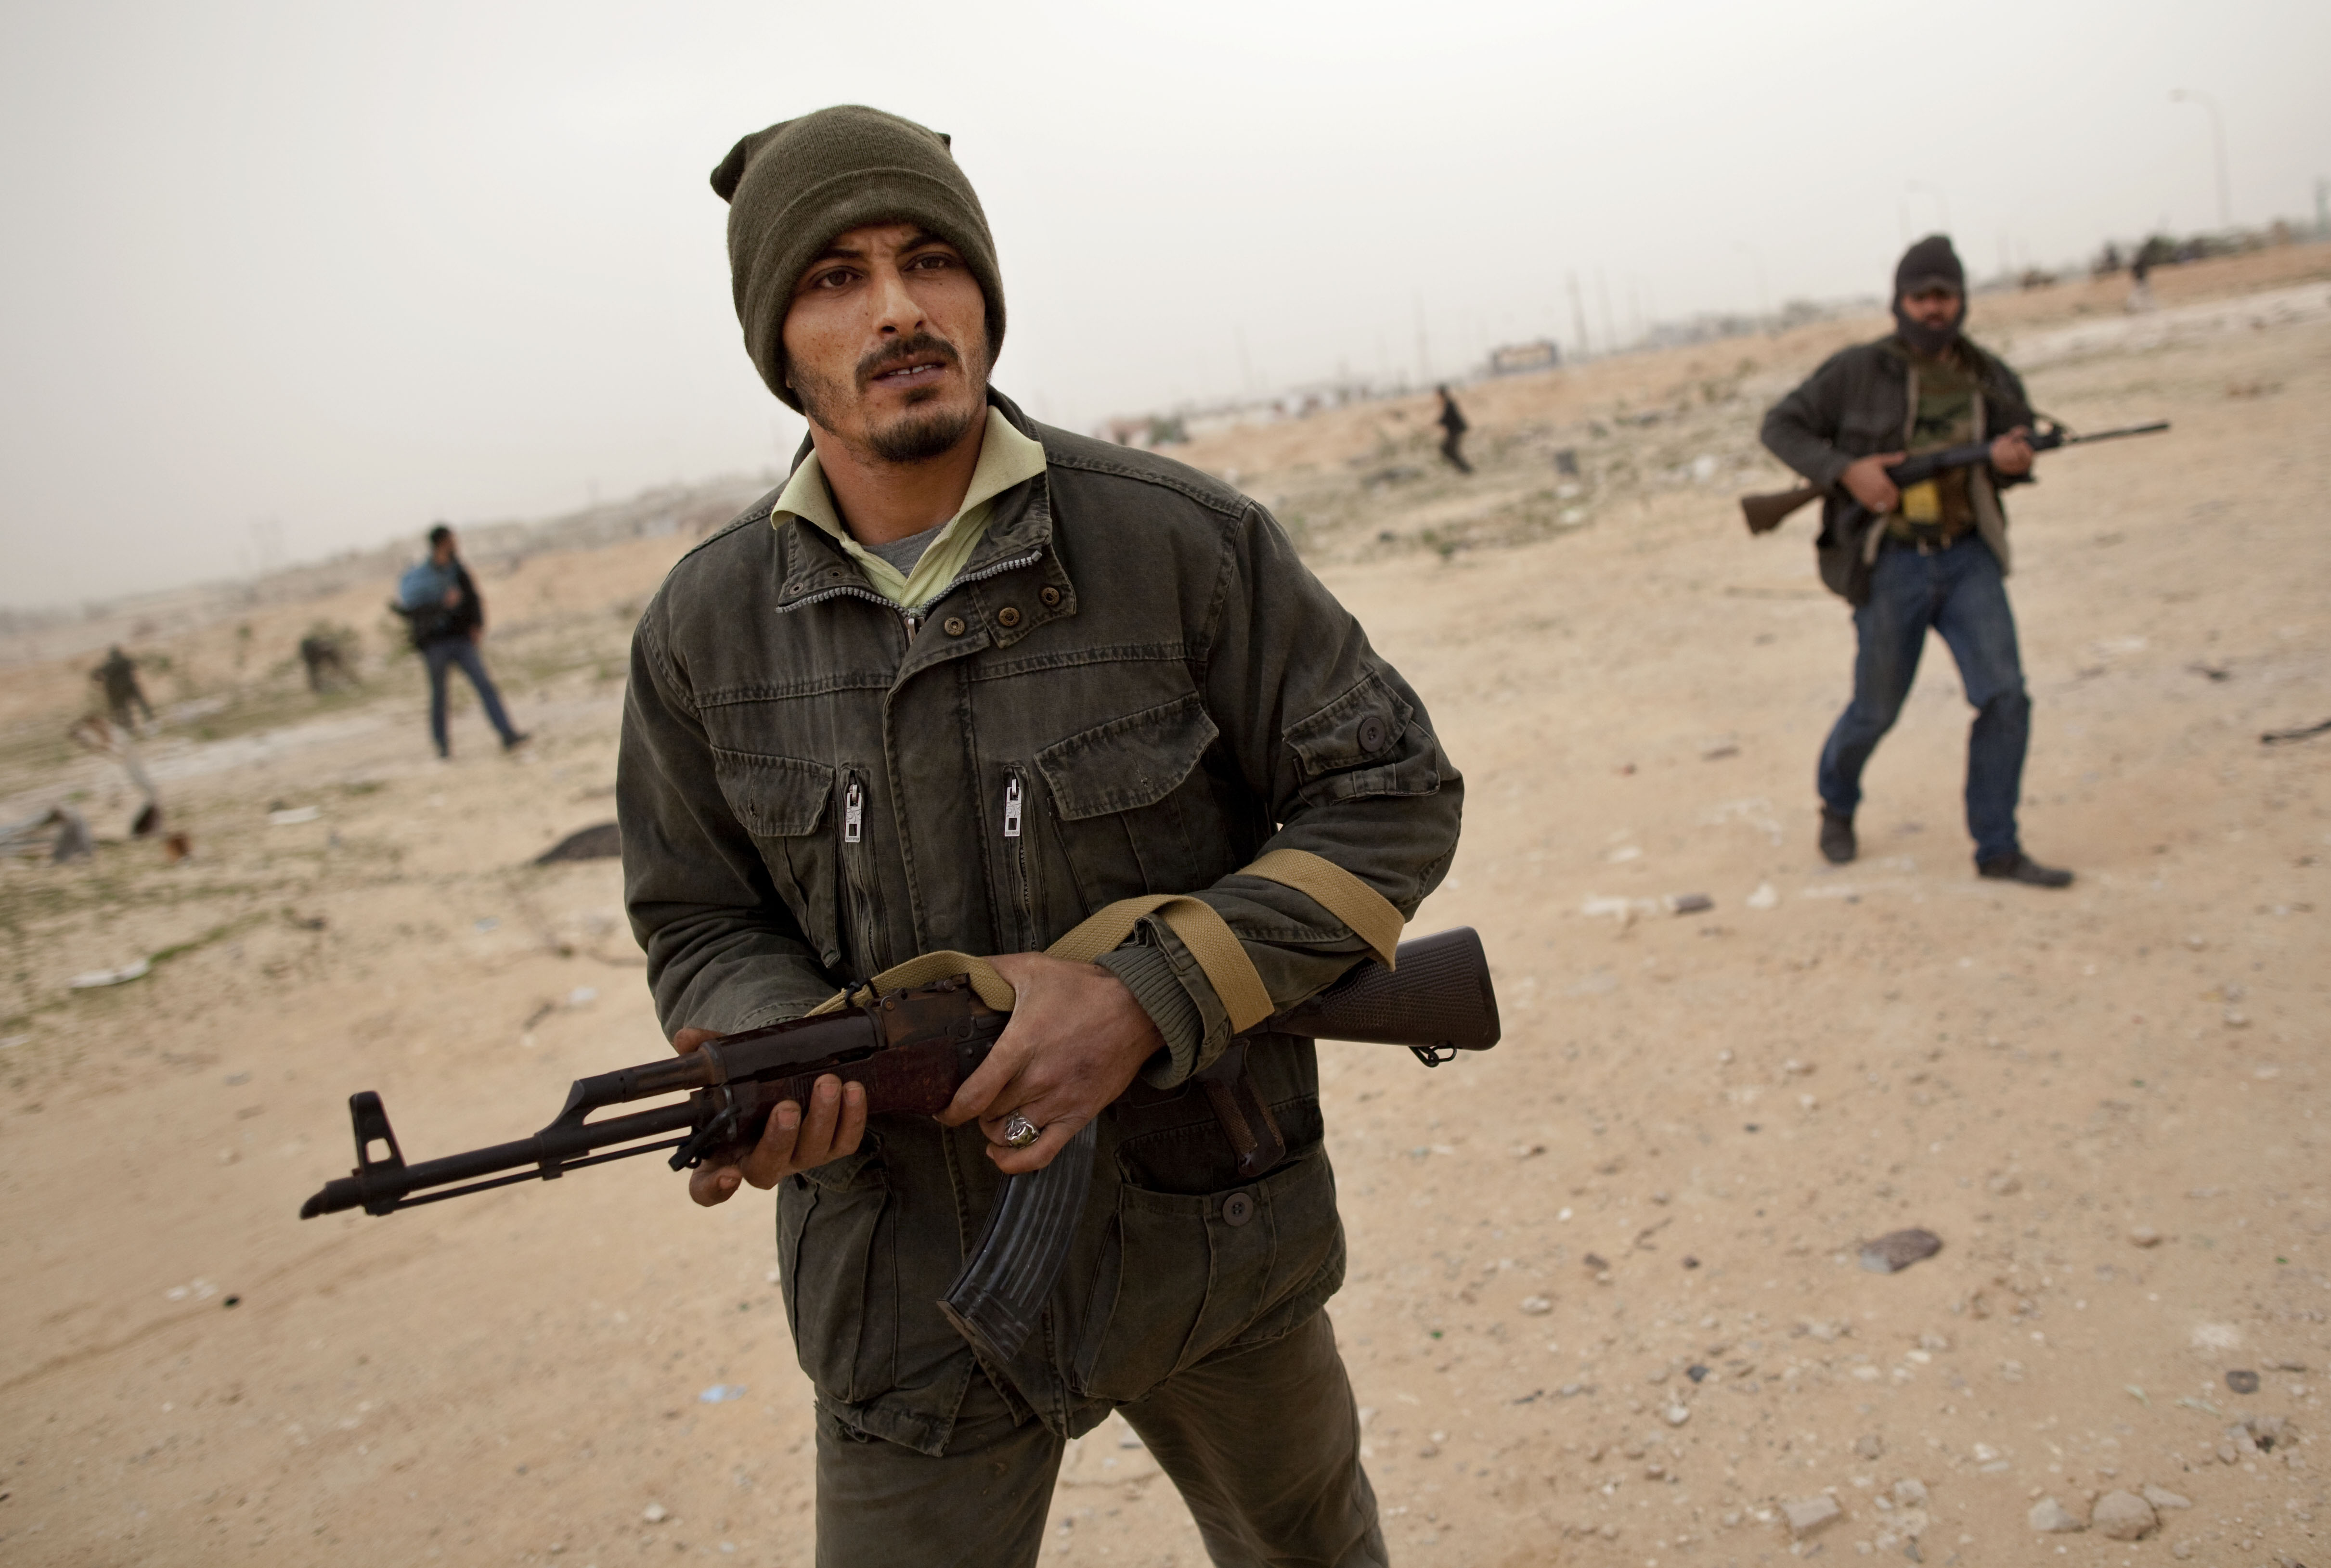 Här ser vi en libysk rebell på helspänn.